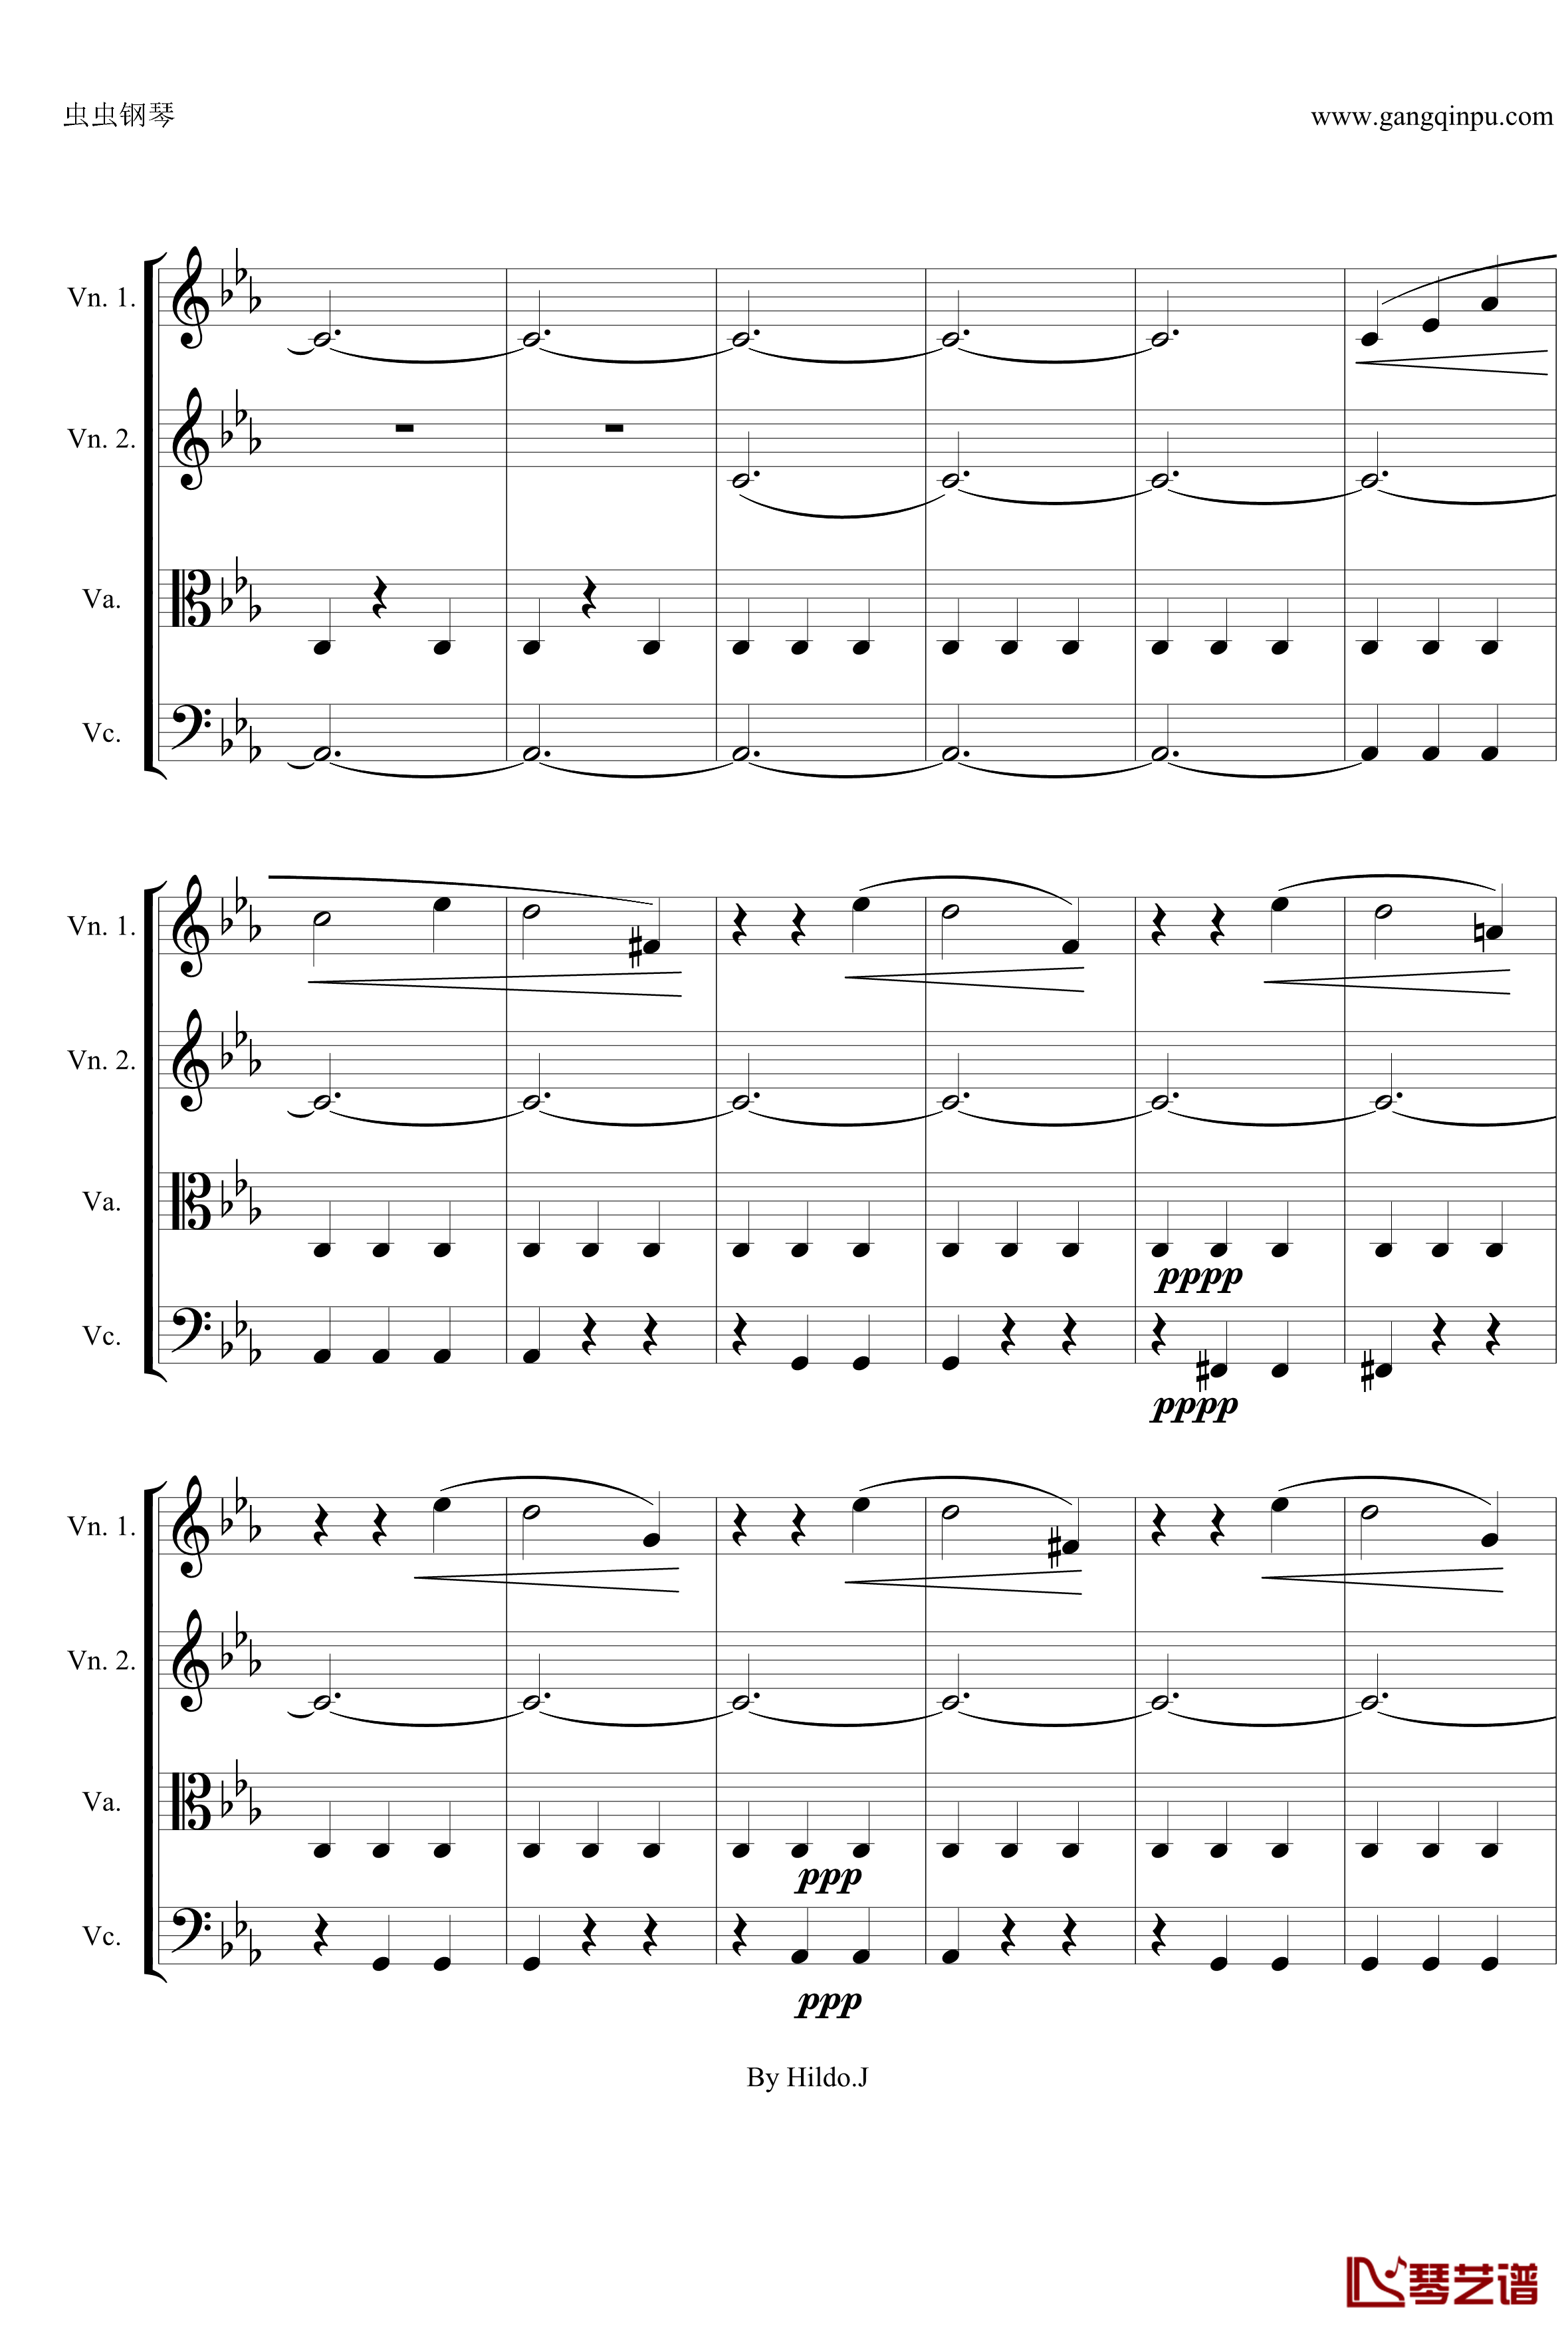 命运交响曲第三乐章钢琴谱-弦乐版-贝多芬-beethoven22